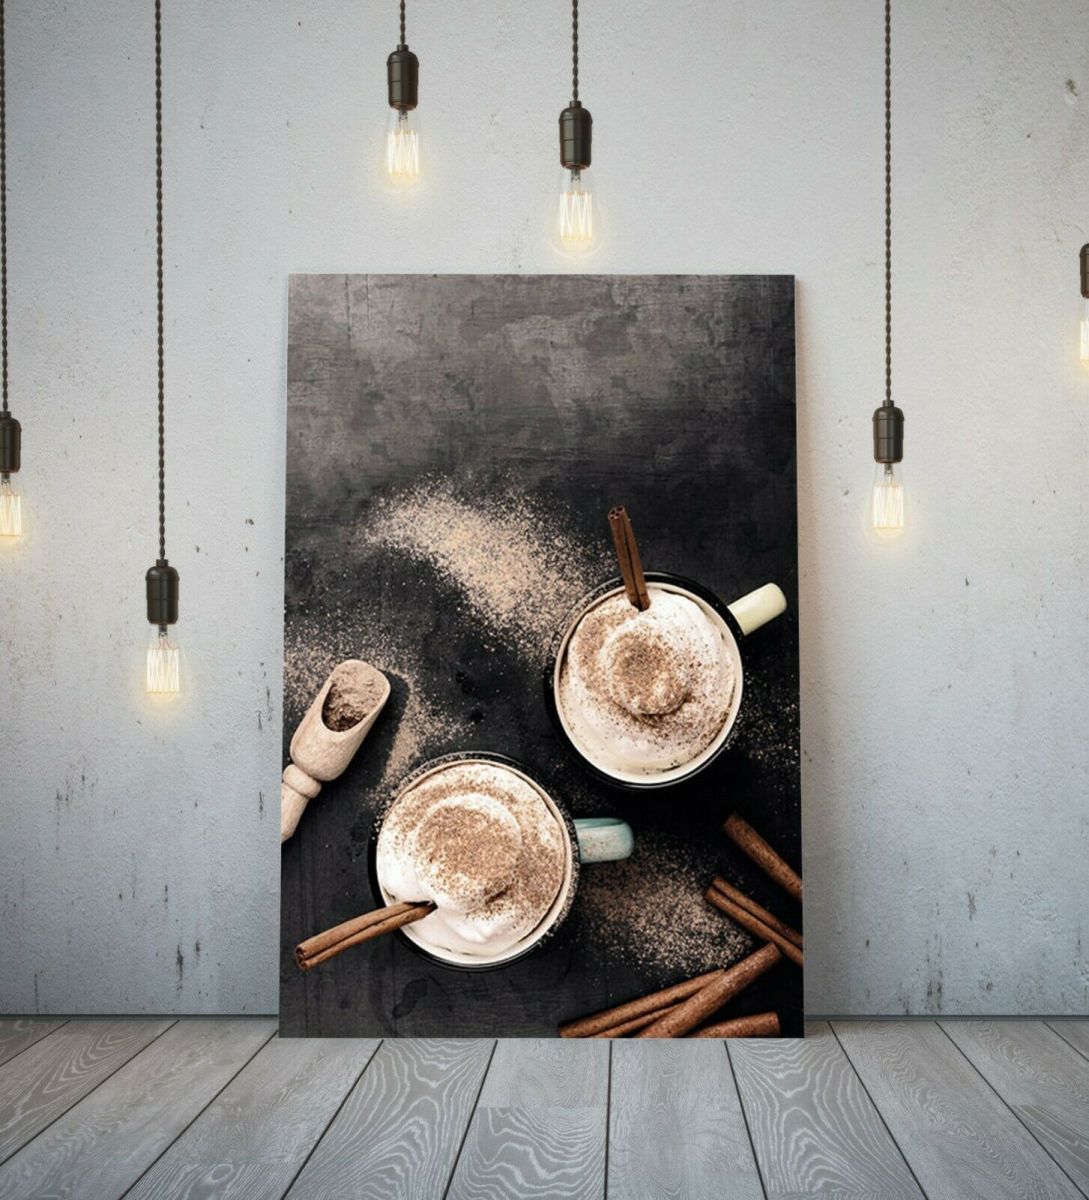 咖啡拿铁 咖啡拿铁海报 高品质帆布画框画 A1艺术板 北欧外国画 抽象画 咖啡厅酒吧 时尚, 印刷材料, 海报, 其他的